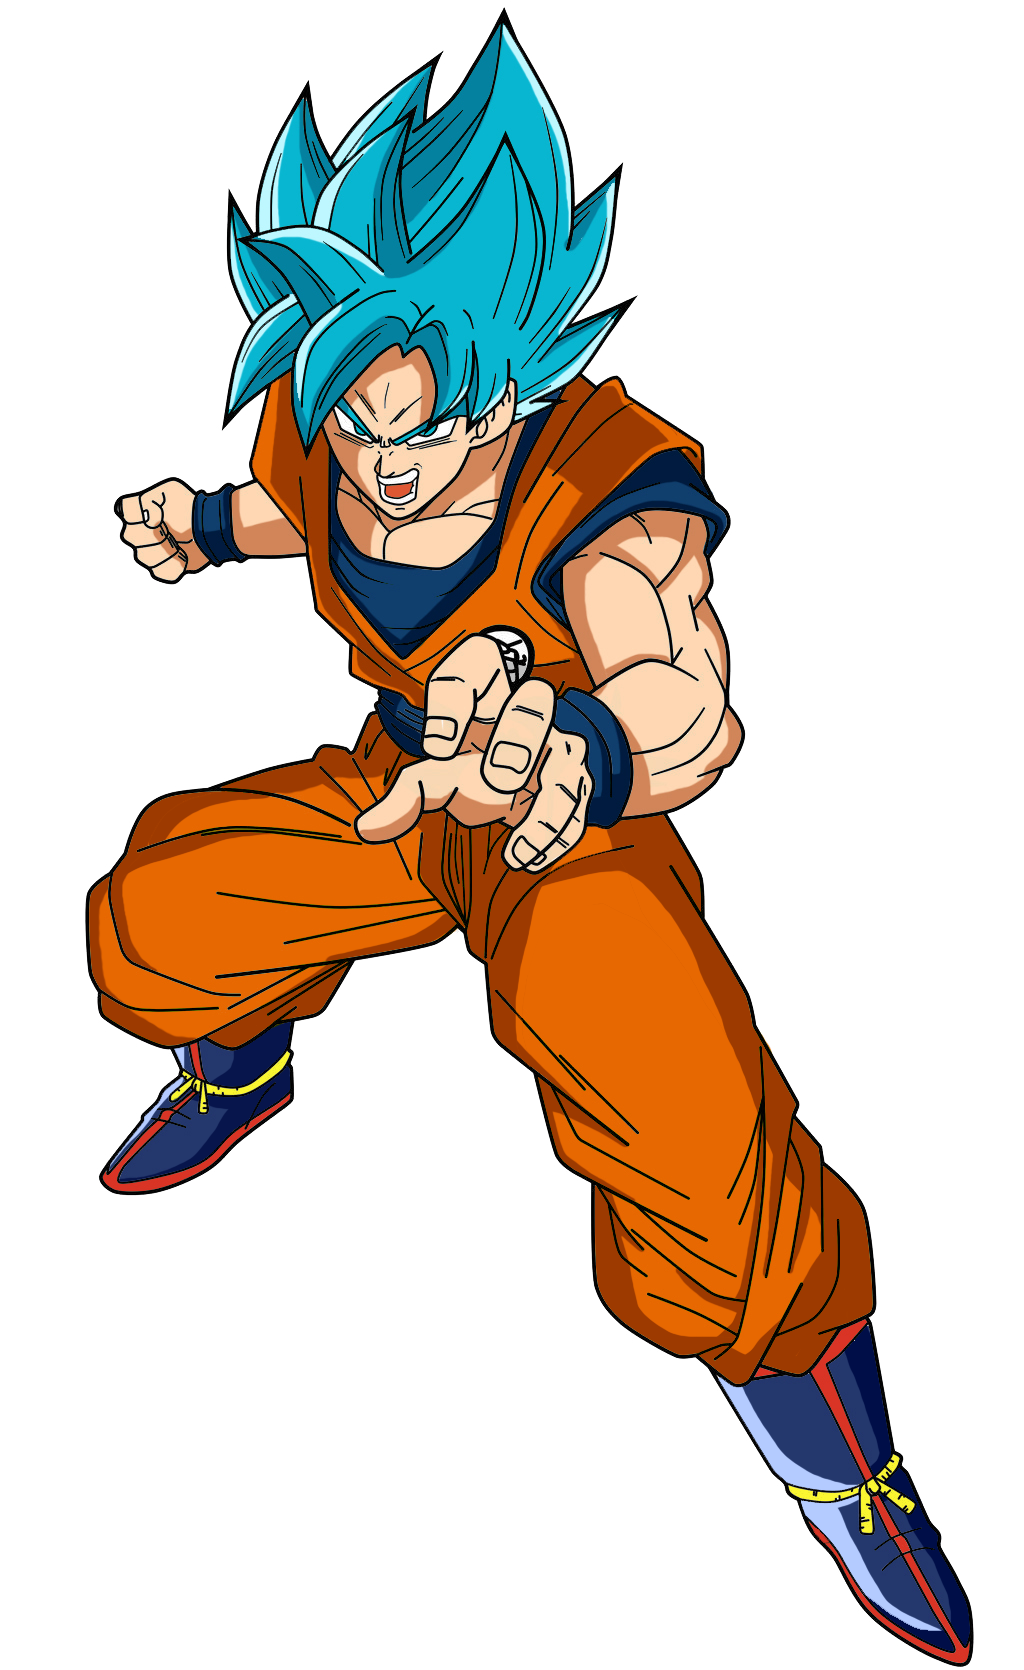 Goku Super Saiyan Blue, Son Goku transparent background PNG